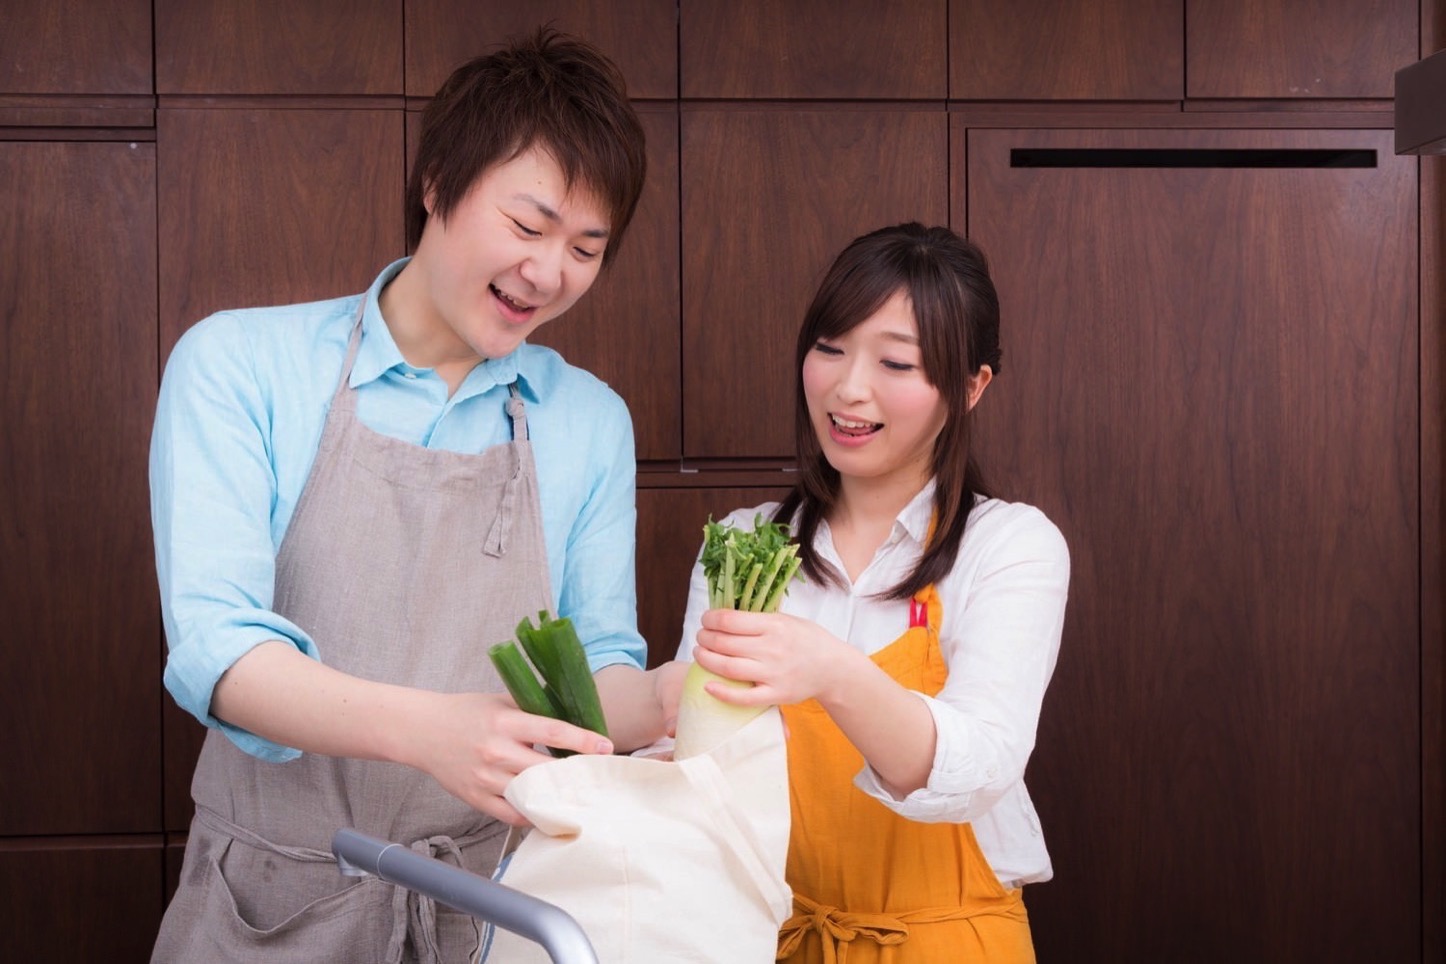 Igarashi-Couple-Cooking-Free-Photos-13.jpg